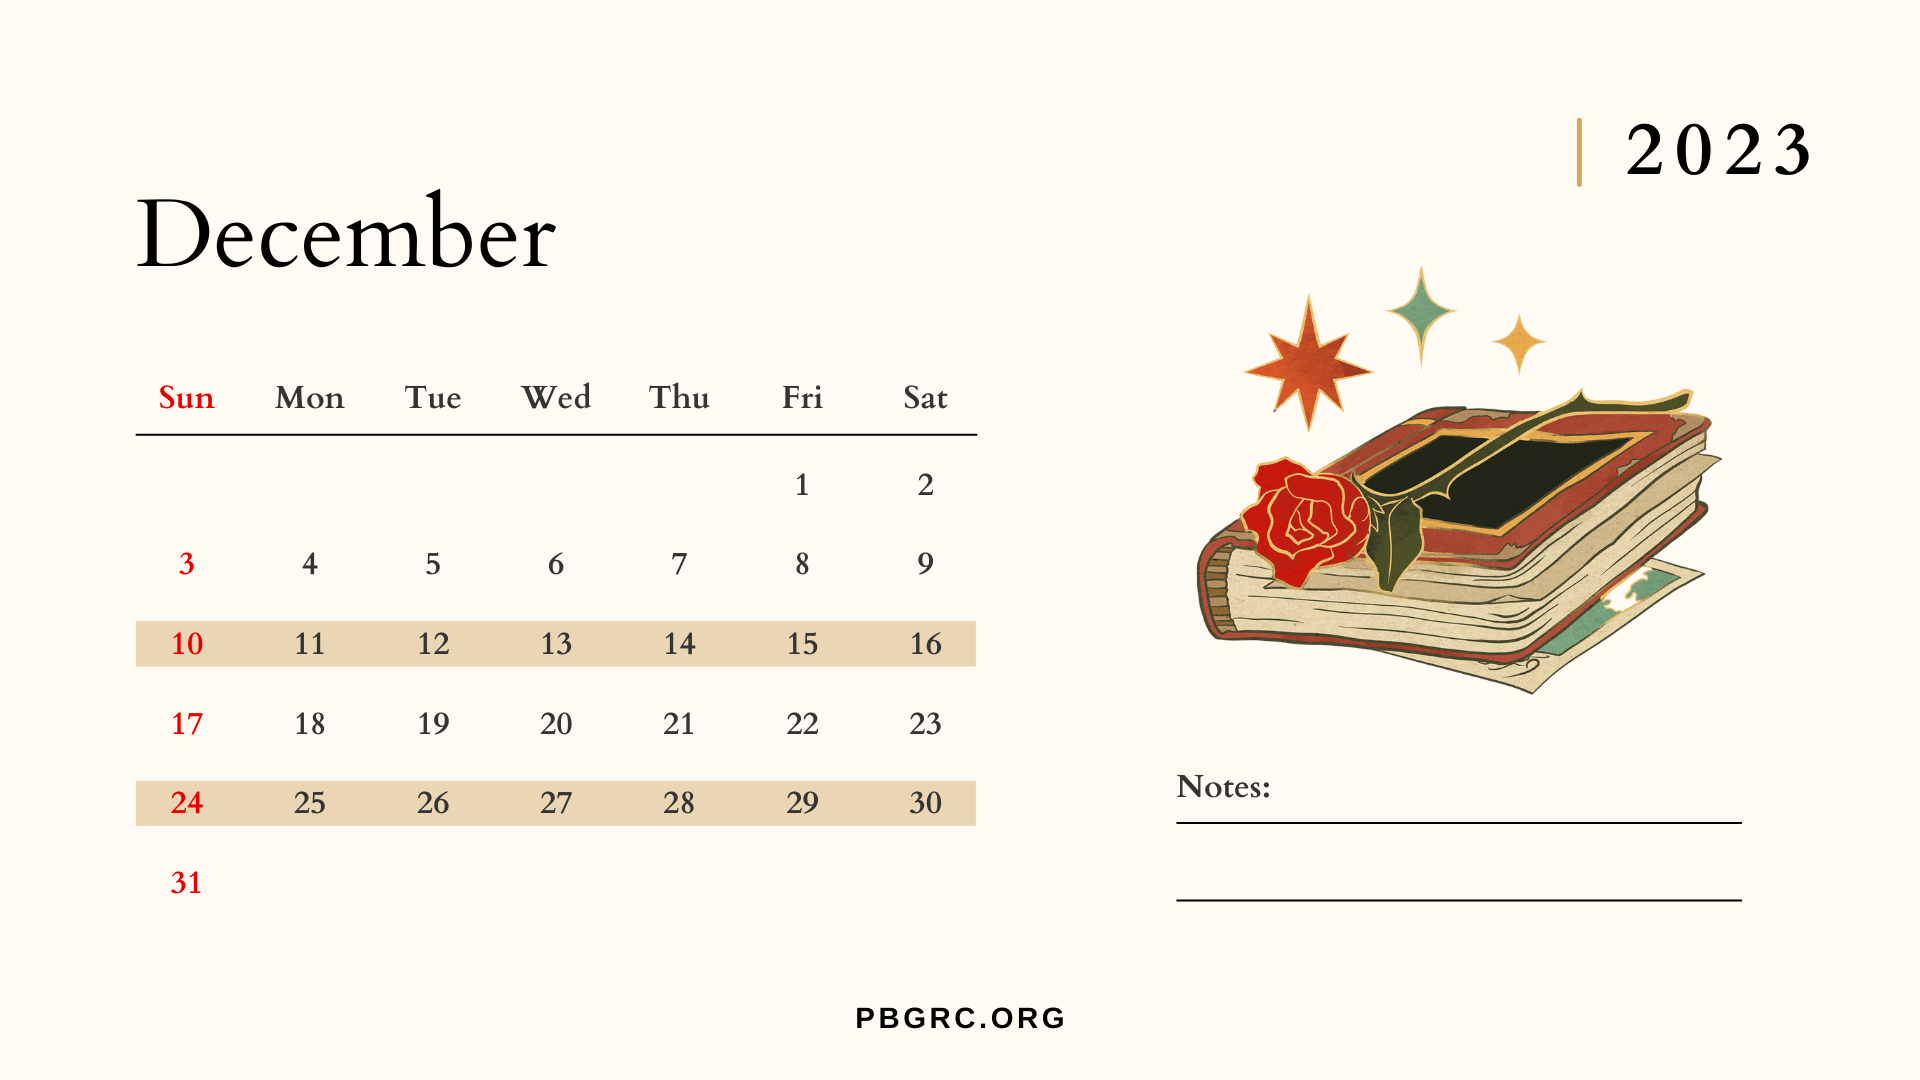 Editable December 2023 Calendar